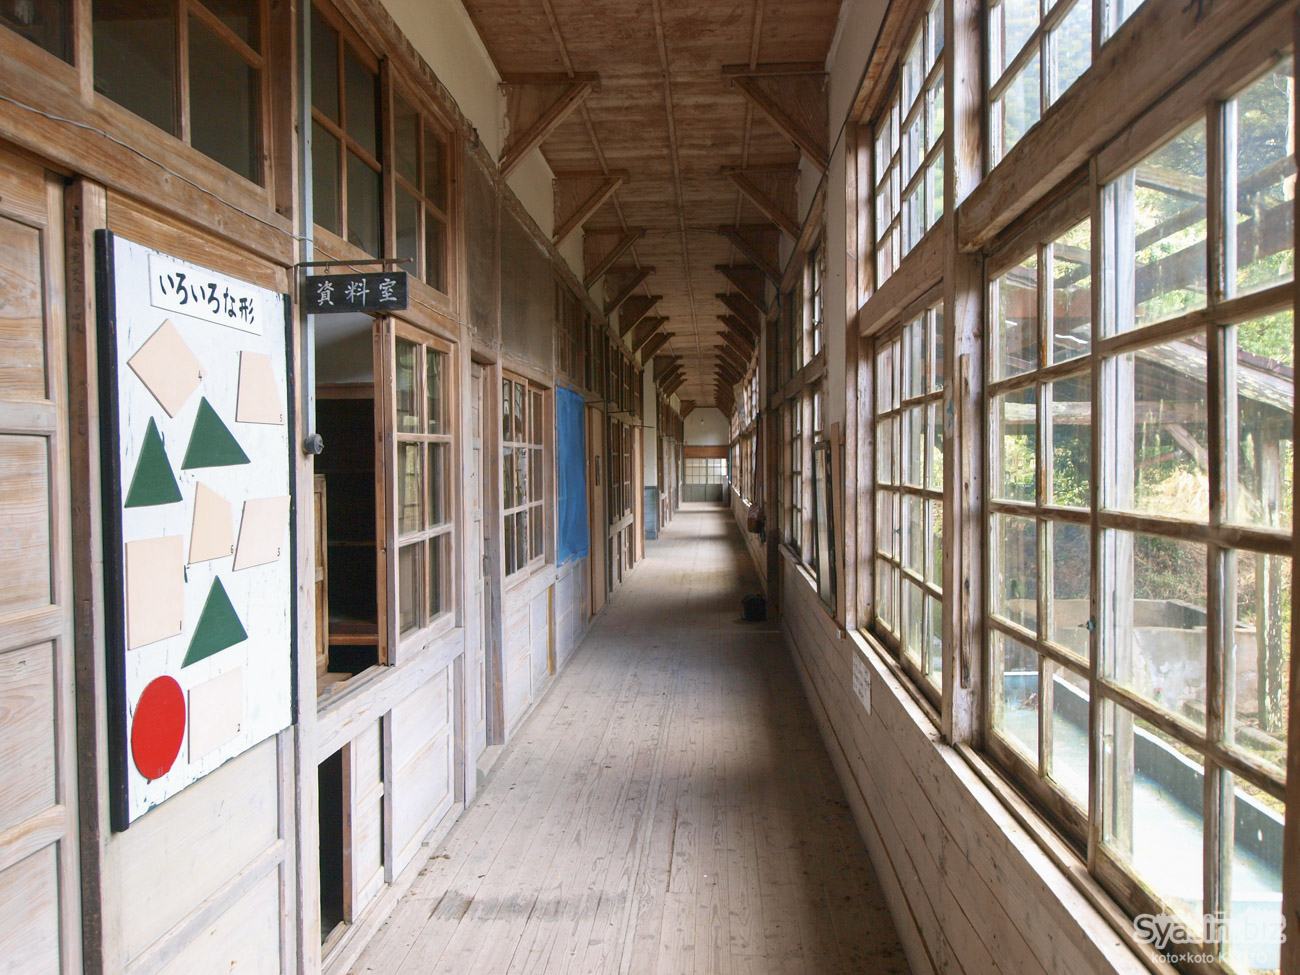 池原小学校 – 佐賀七山にある廃校・木造校舎